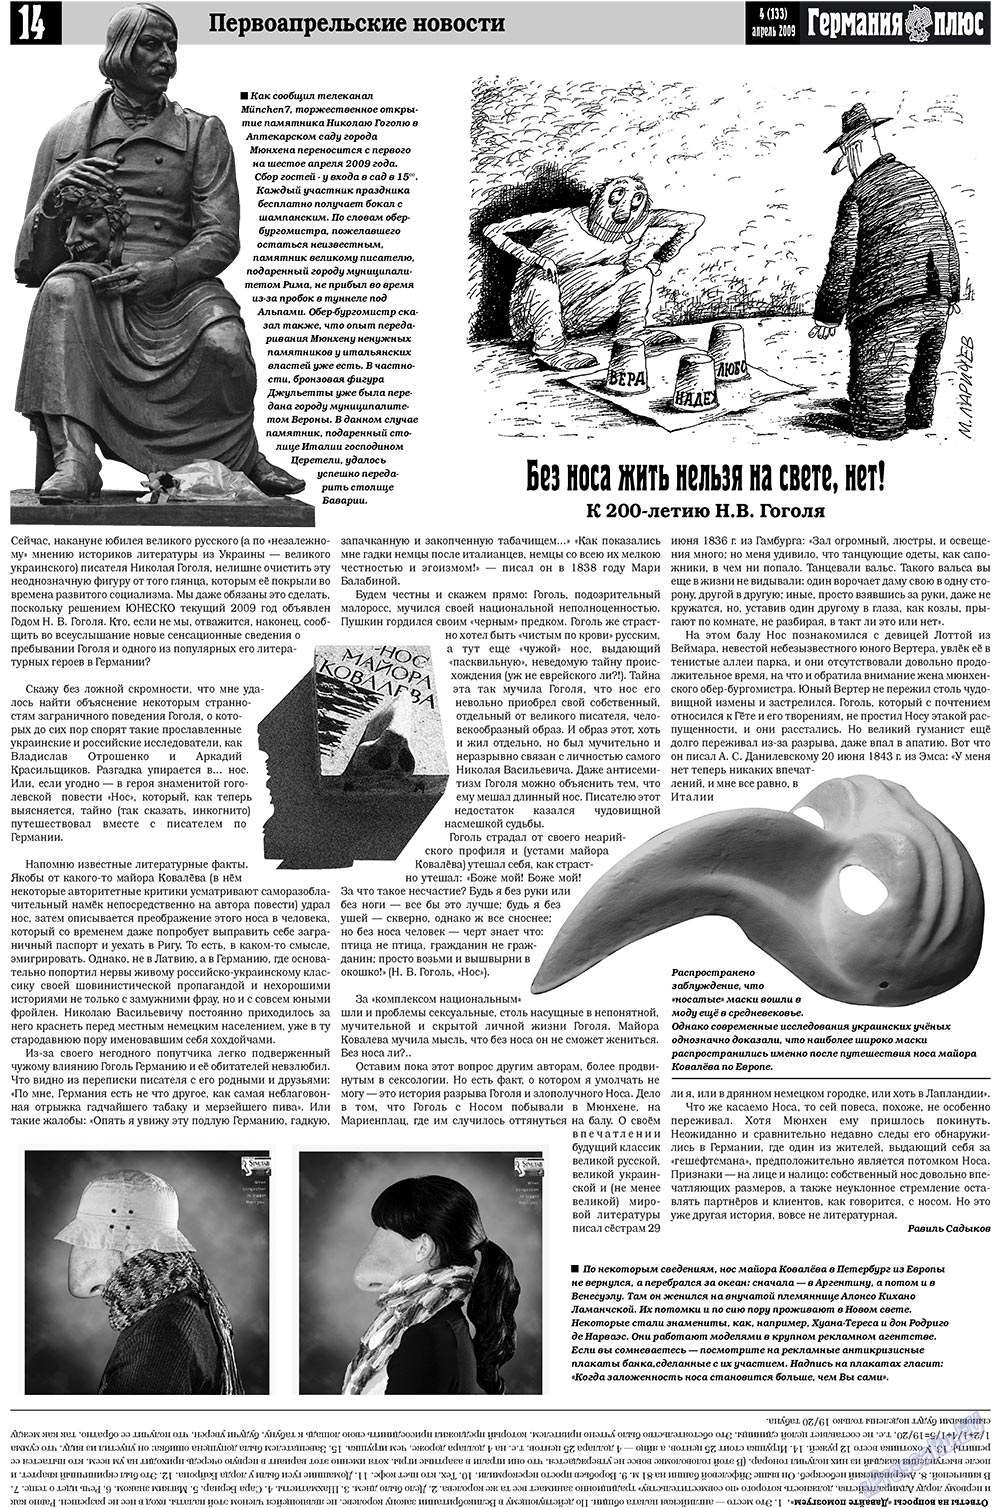 Германия плюс (газета). 2009 год, номер 4, стр. 18